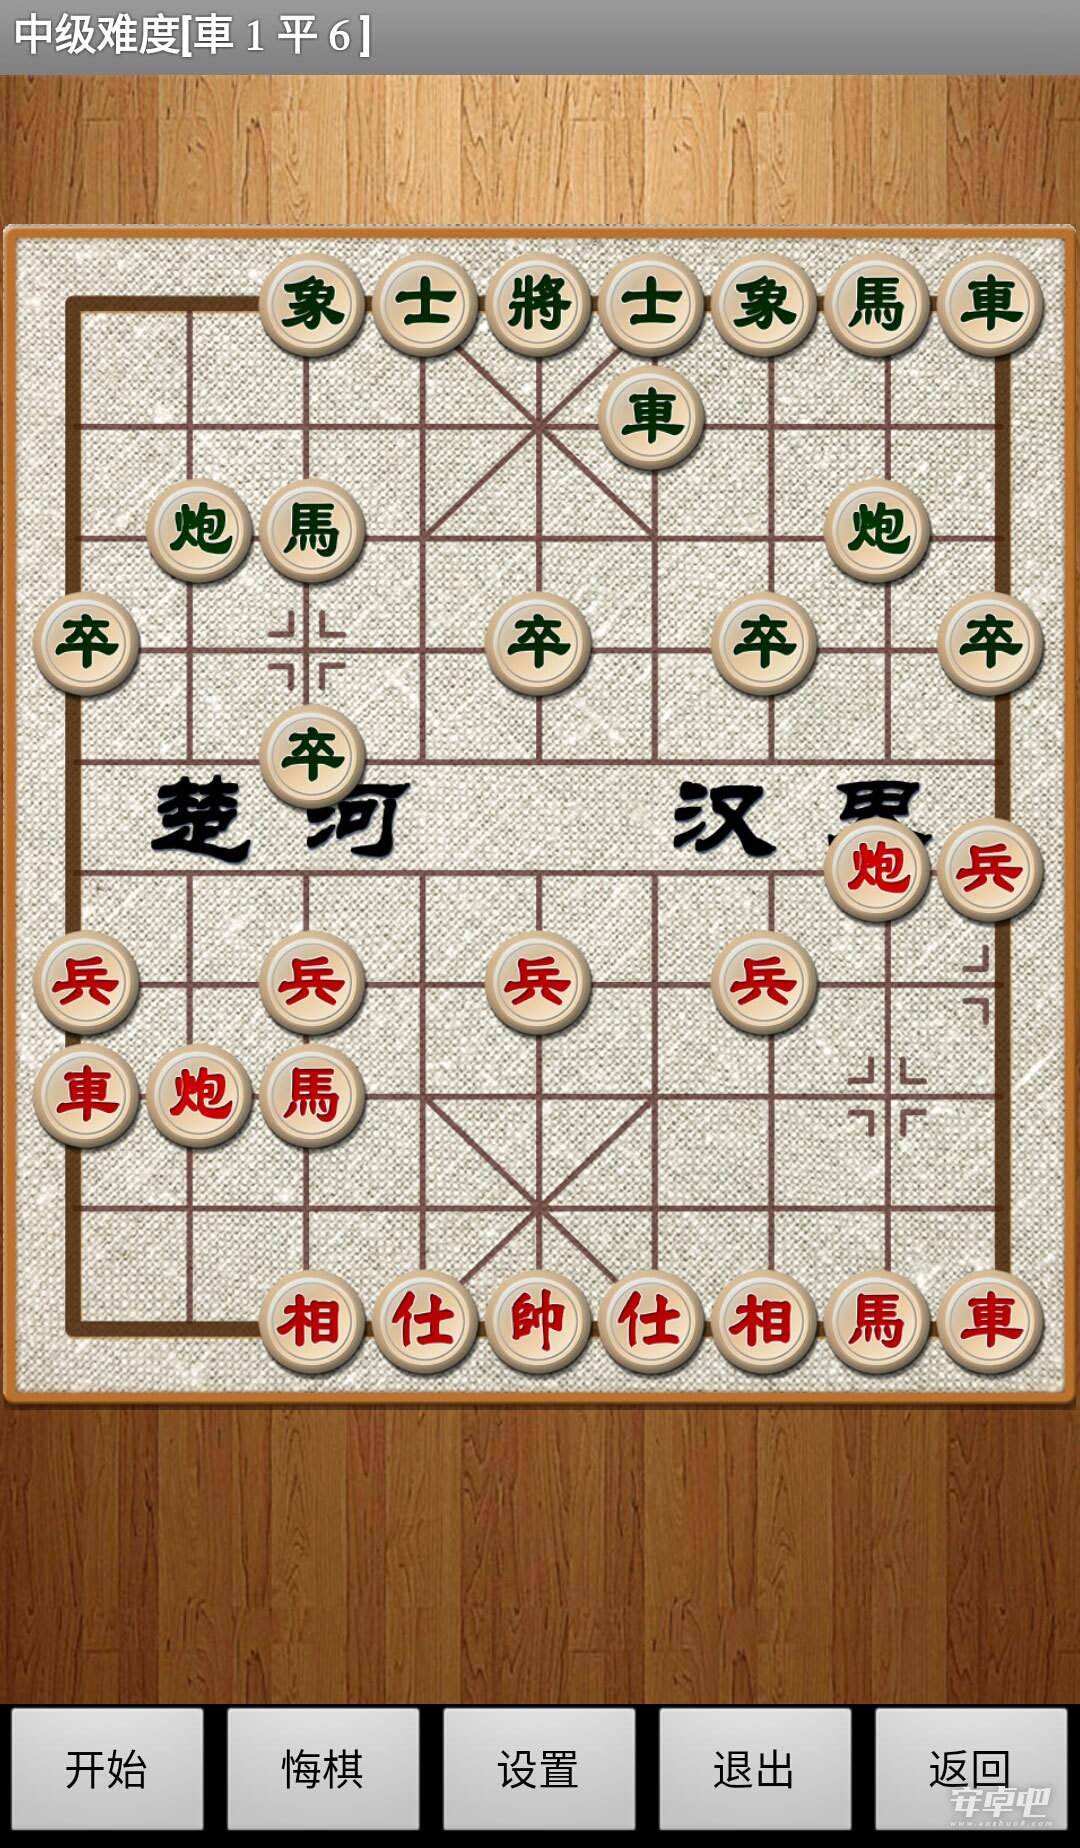 经典中国象棋老版3